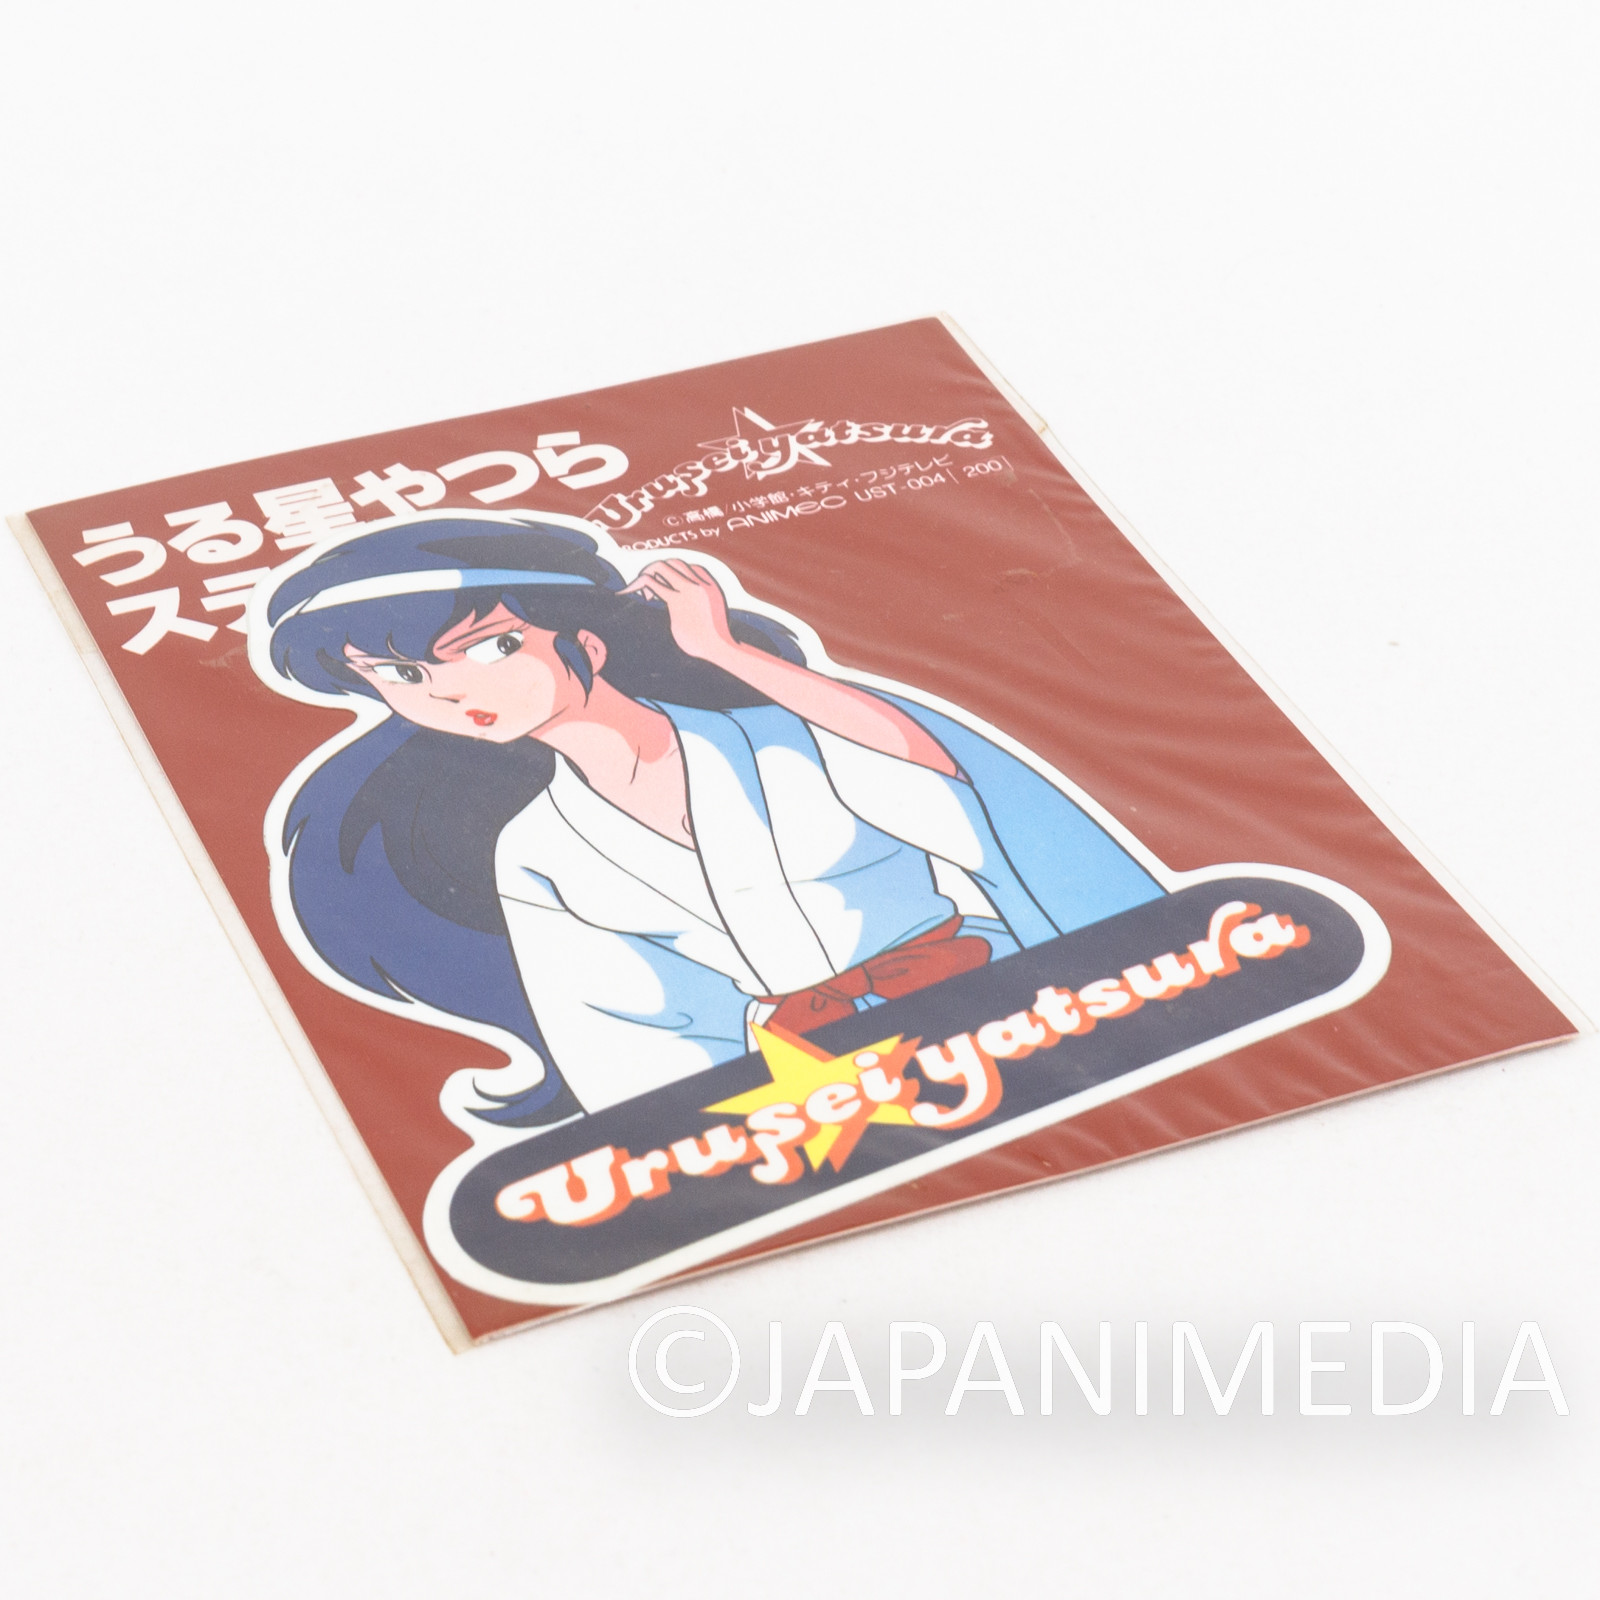 Retro Urusei Yatsura Sticker SAKURA #1 JAPAN ANIME SEIKA NOTE